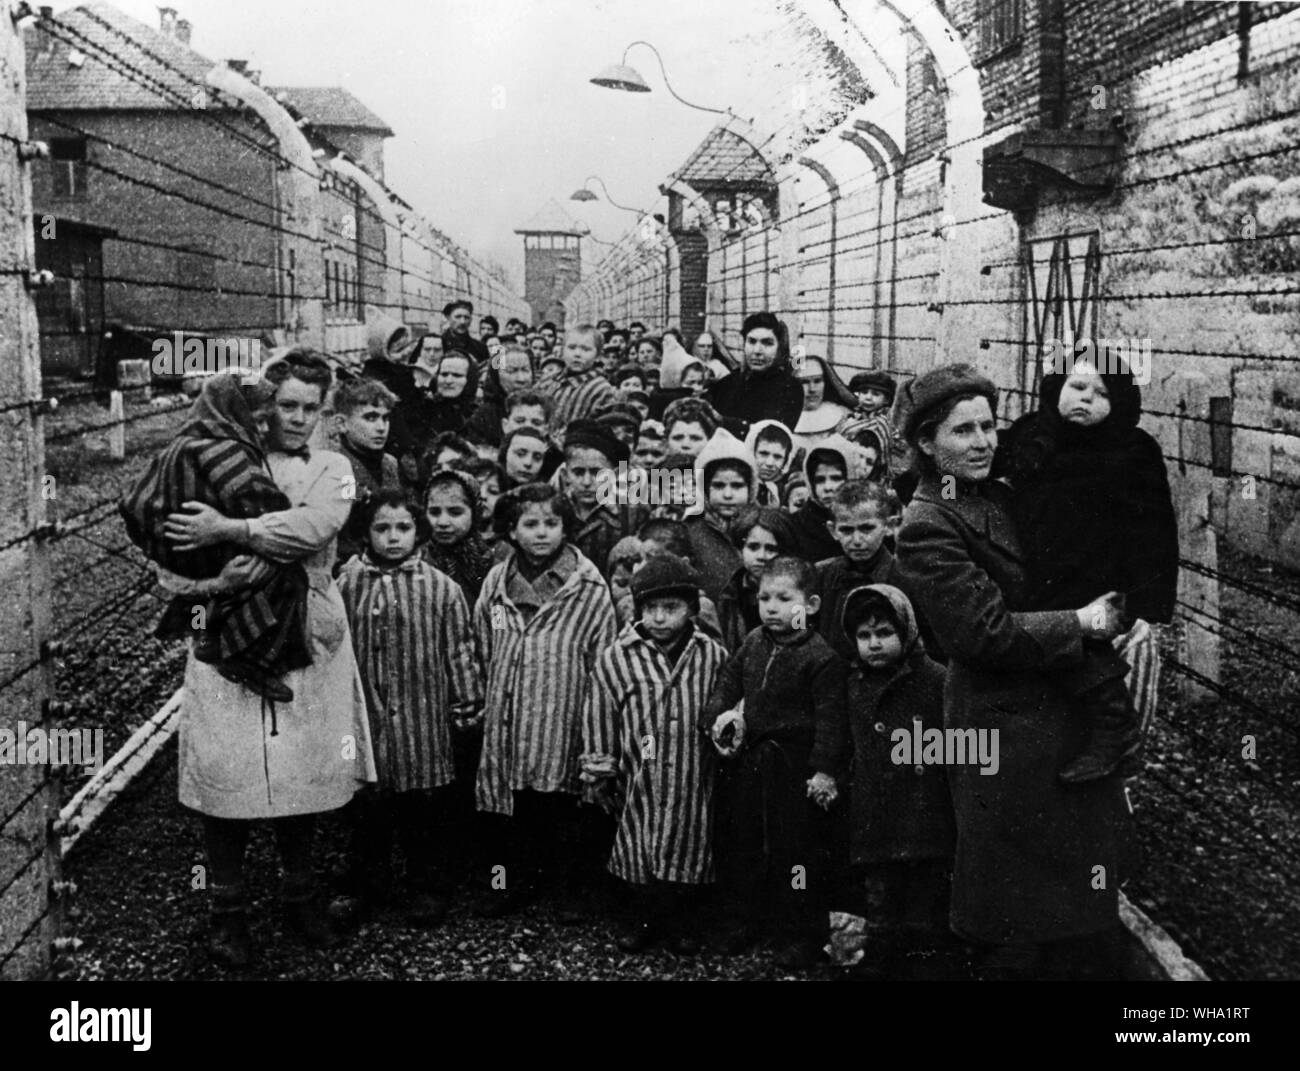 WW2: Erste Stunden unmittelbar nach der Sowjetischen Armee das Konzentrationslager Auschwitz befreit, Januar 1945. Auschwitz, Polen. Sowjetische Ärzte und Vertreter des Roten Kreuzes mit Kind - Gefangene des Lagers. Stockfoto